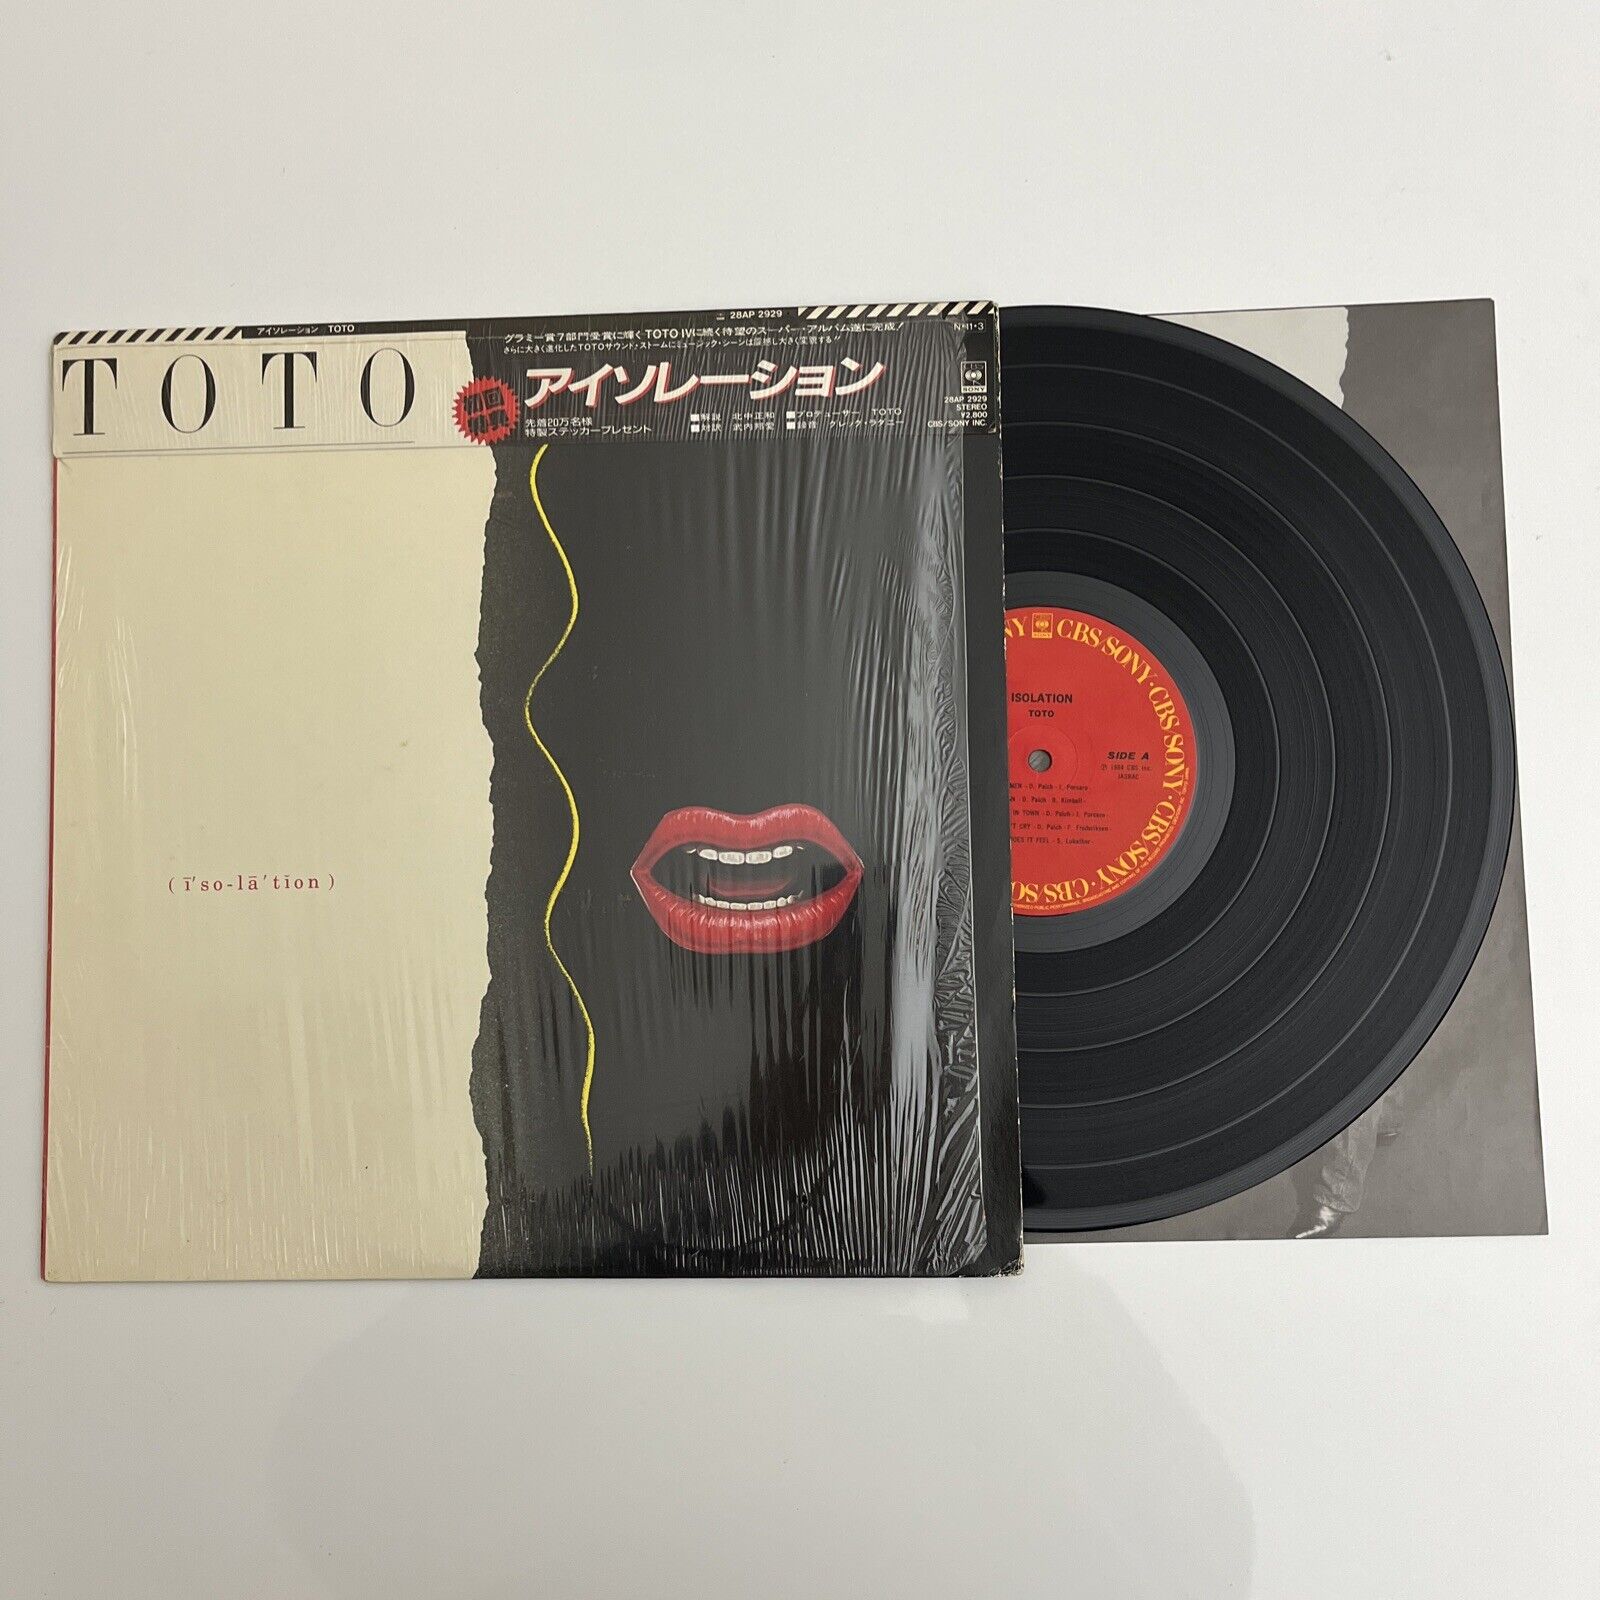 Toto - Isolation LP 1984 Vinyl Record 28AP 2929